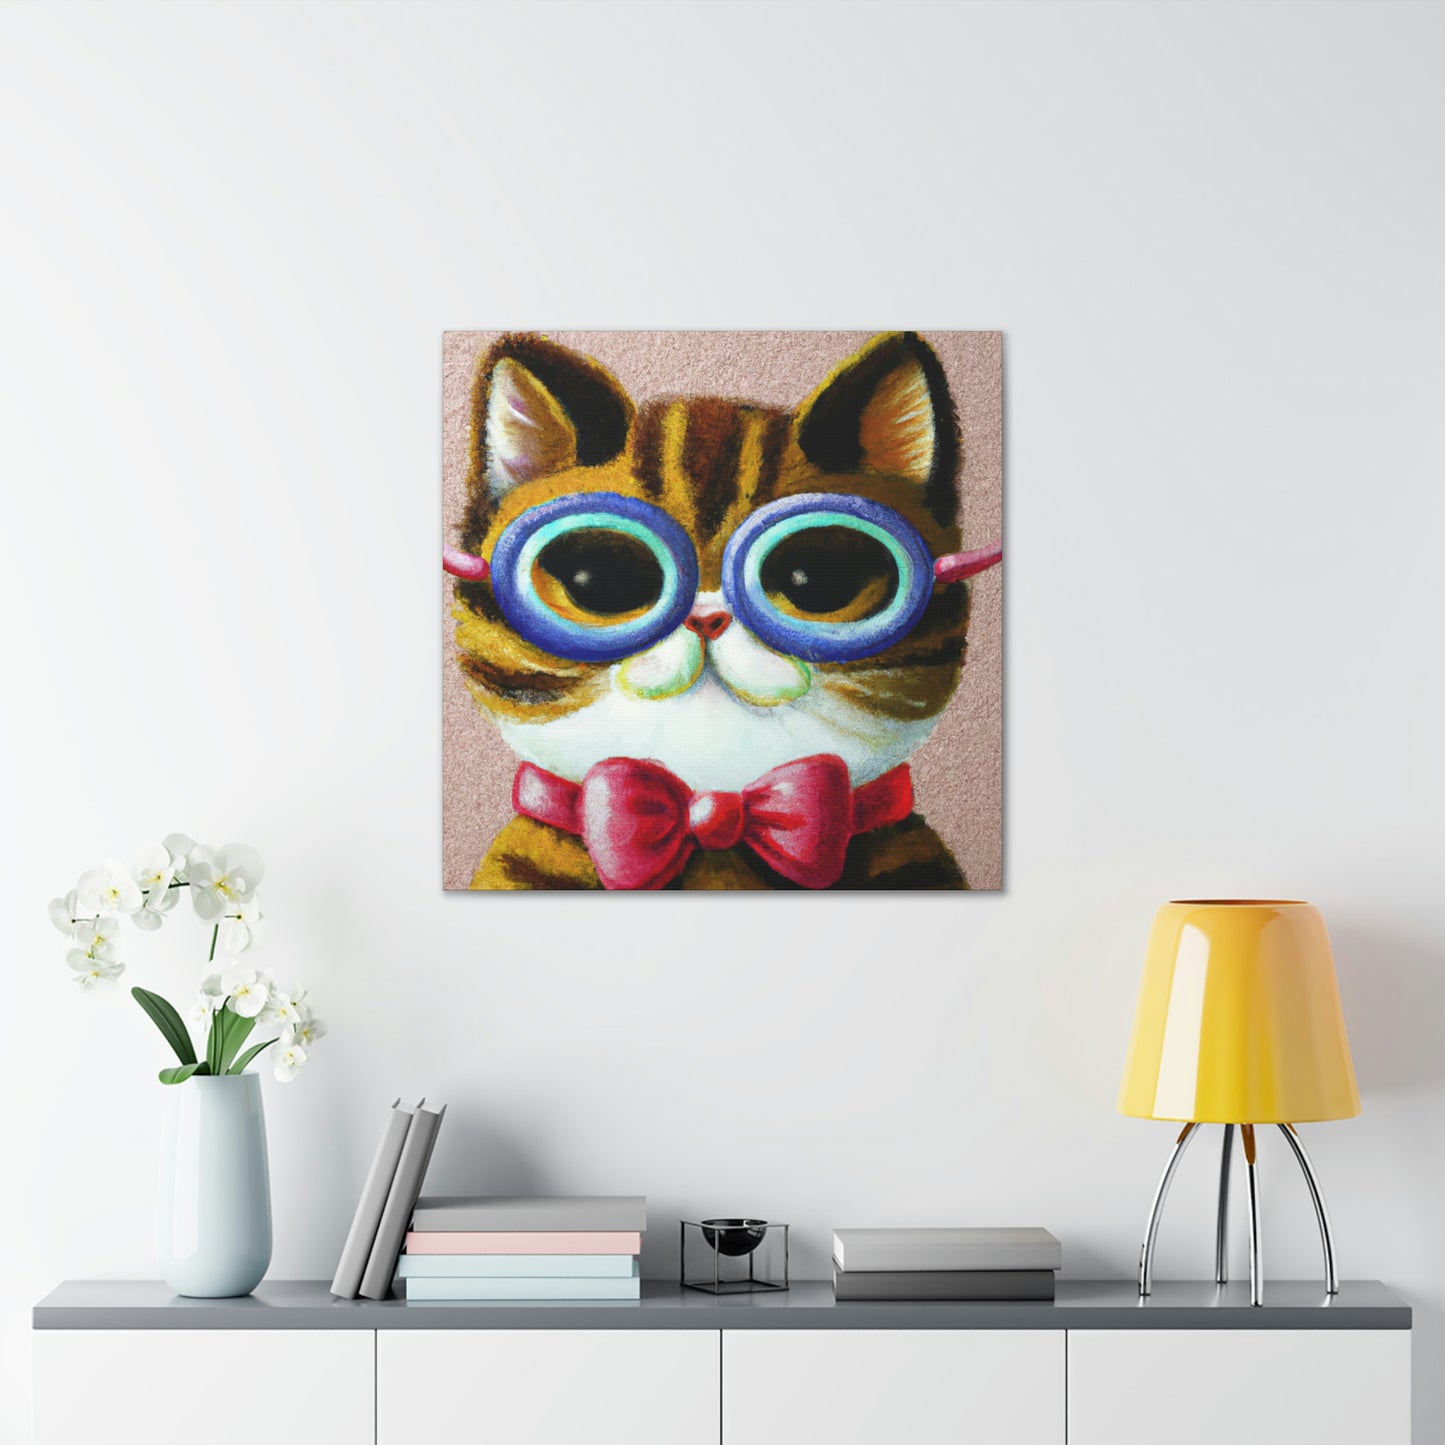 .

Felix Fluffers - Cat Lovers Canvas Wall Art